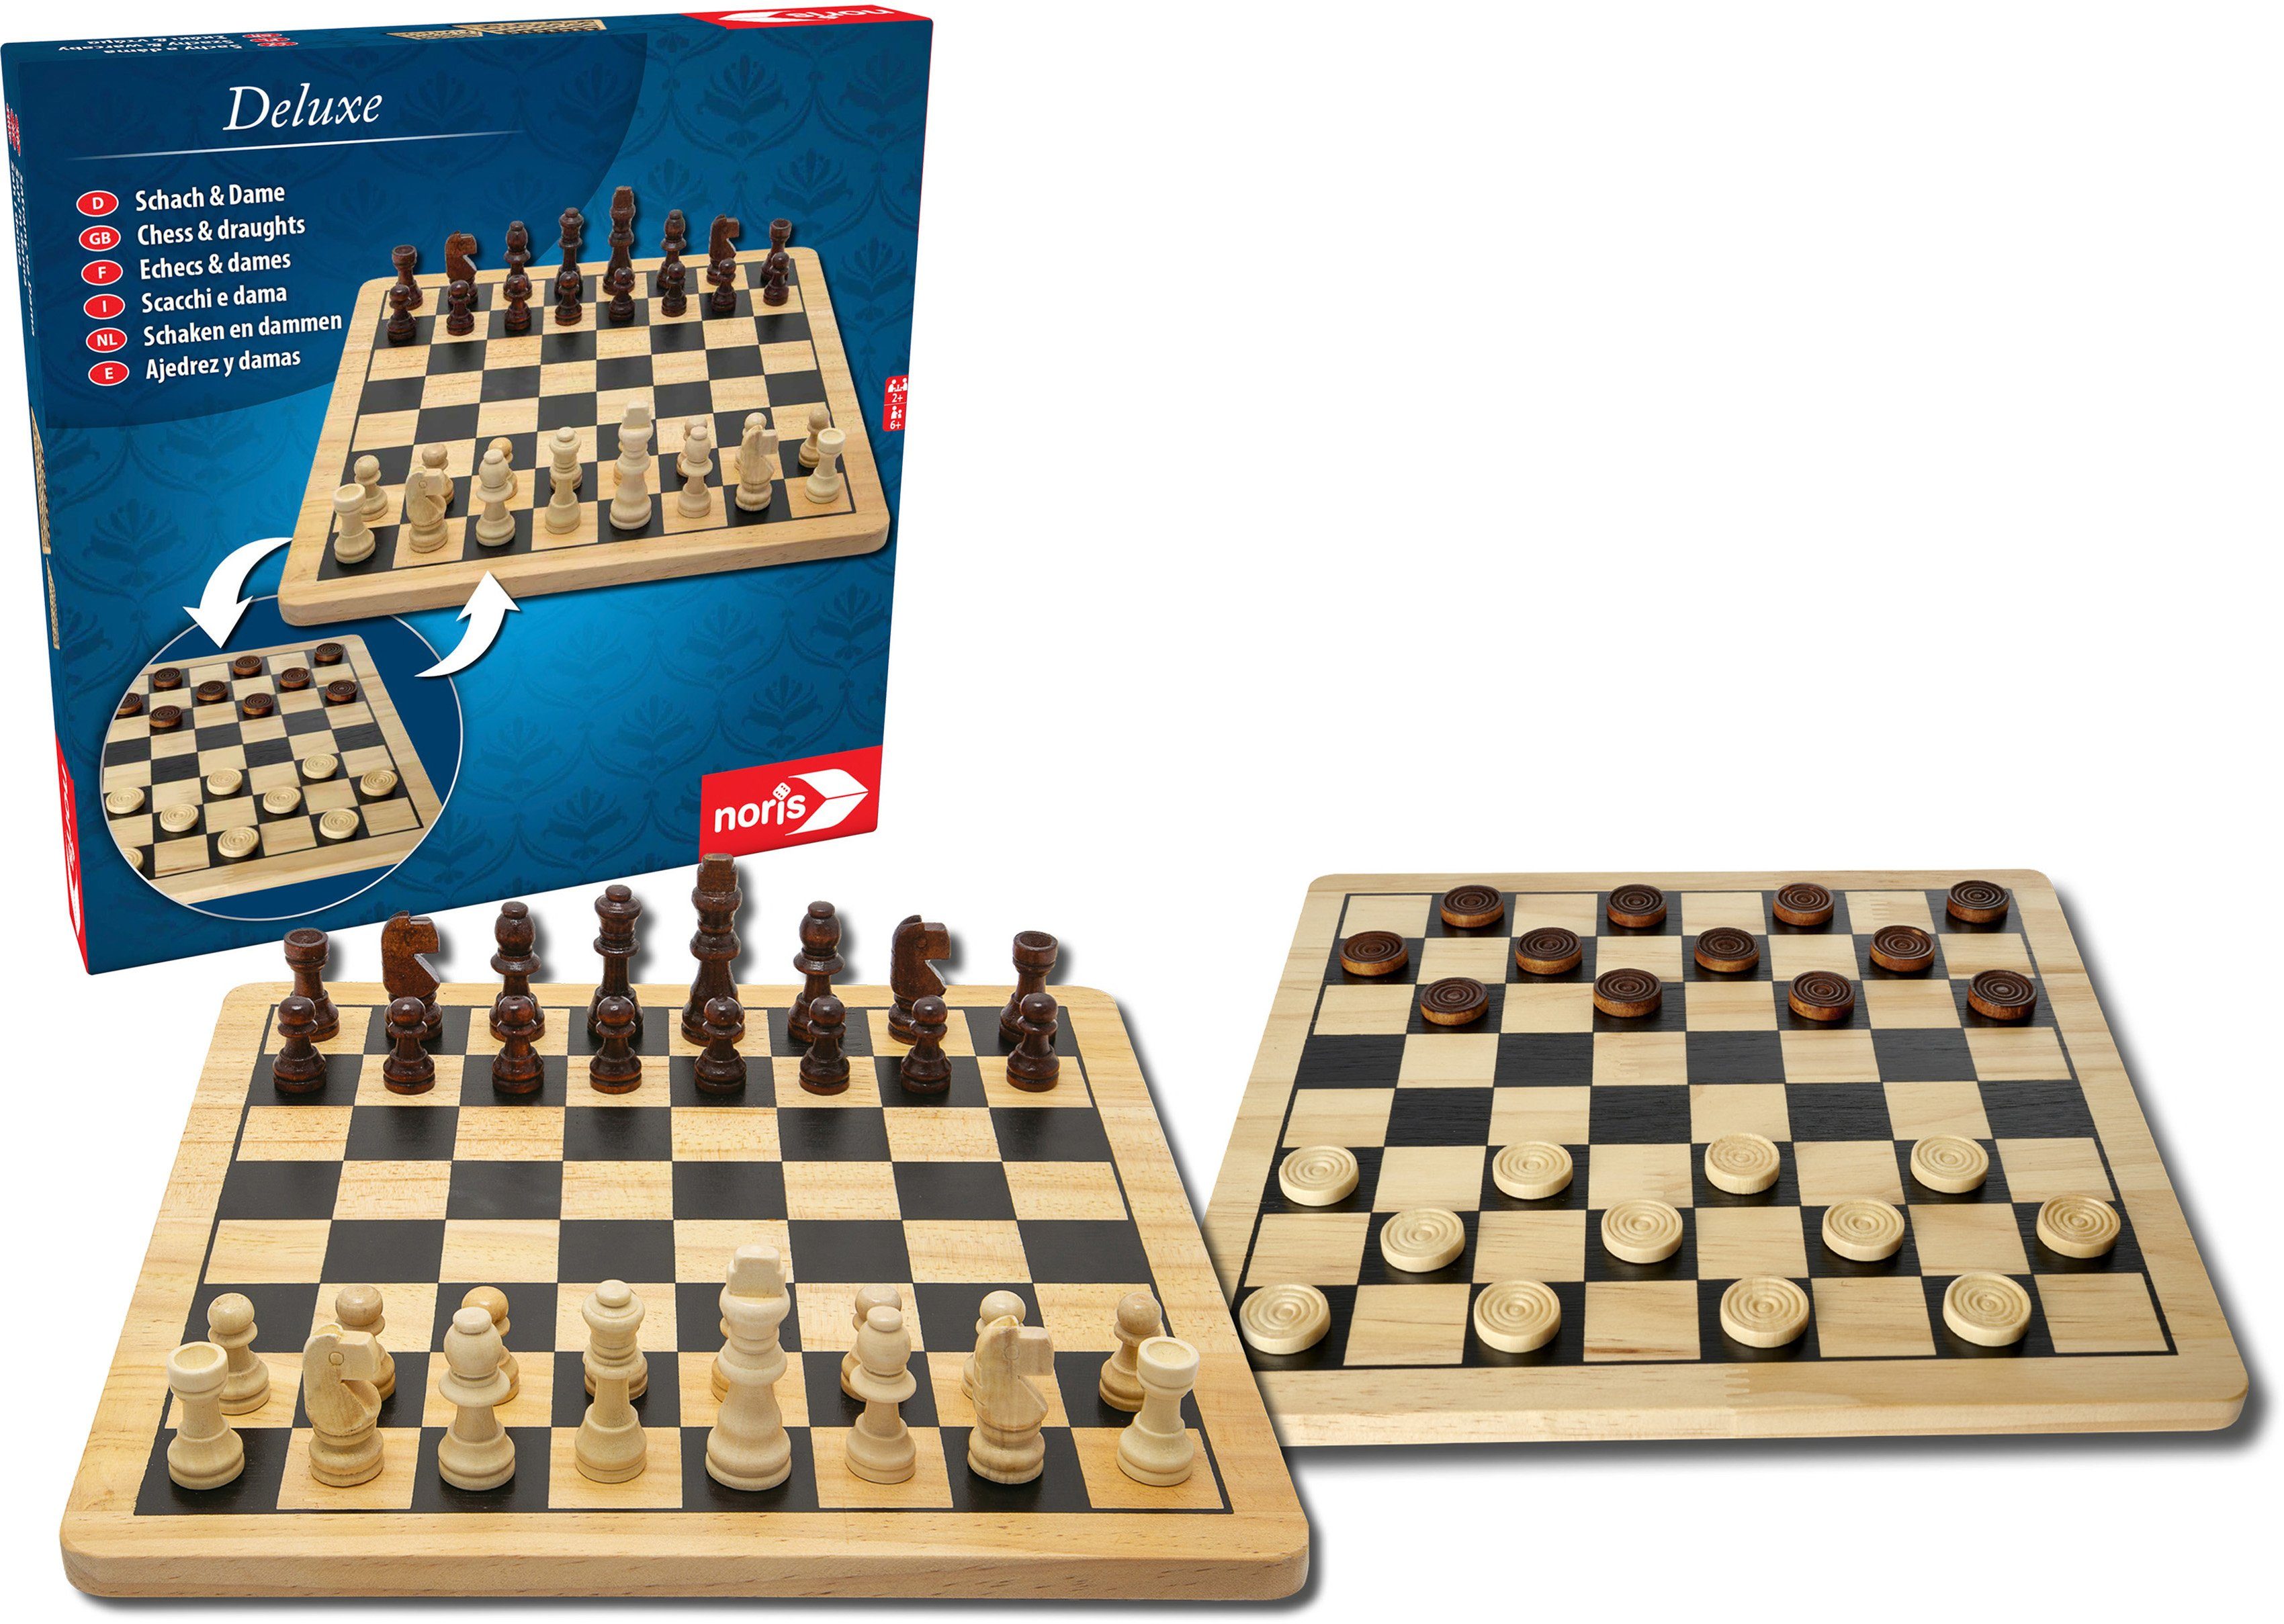 Noris Spiel, Brettspiel Holzspielzeug, Deluxe Holz - Schach & Dame